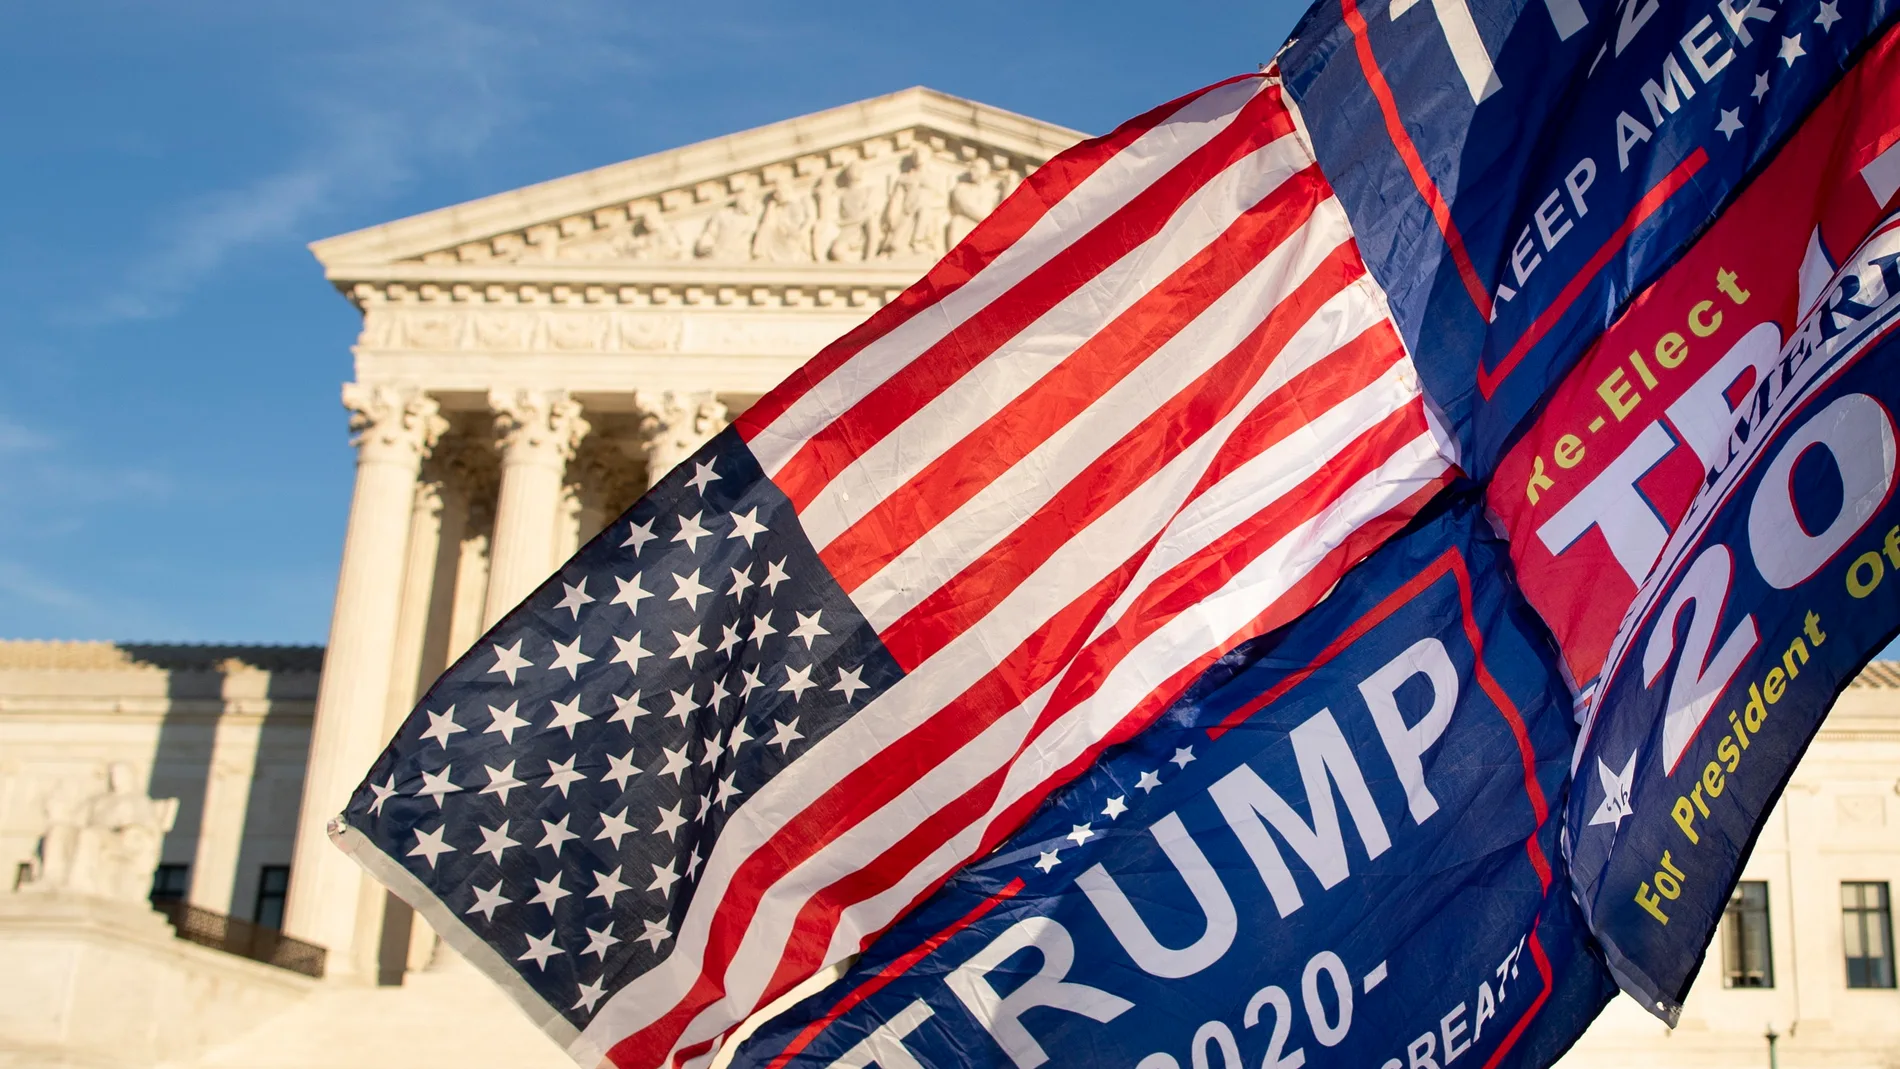 Un seguidor del presidente saliente Donald Trump sostiene una bandera frente al Tribunal Supremo en Washington, DC